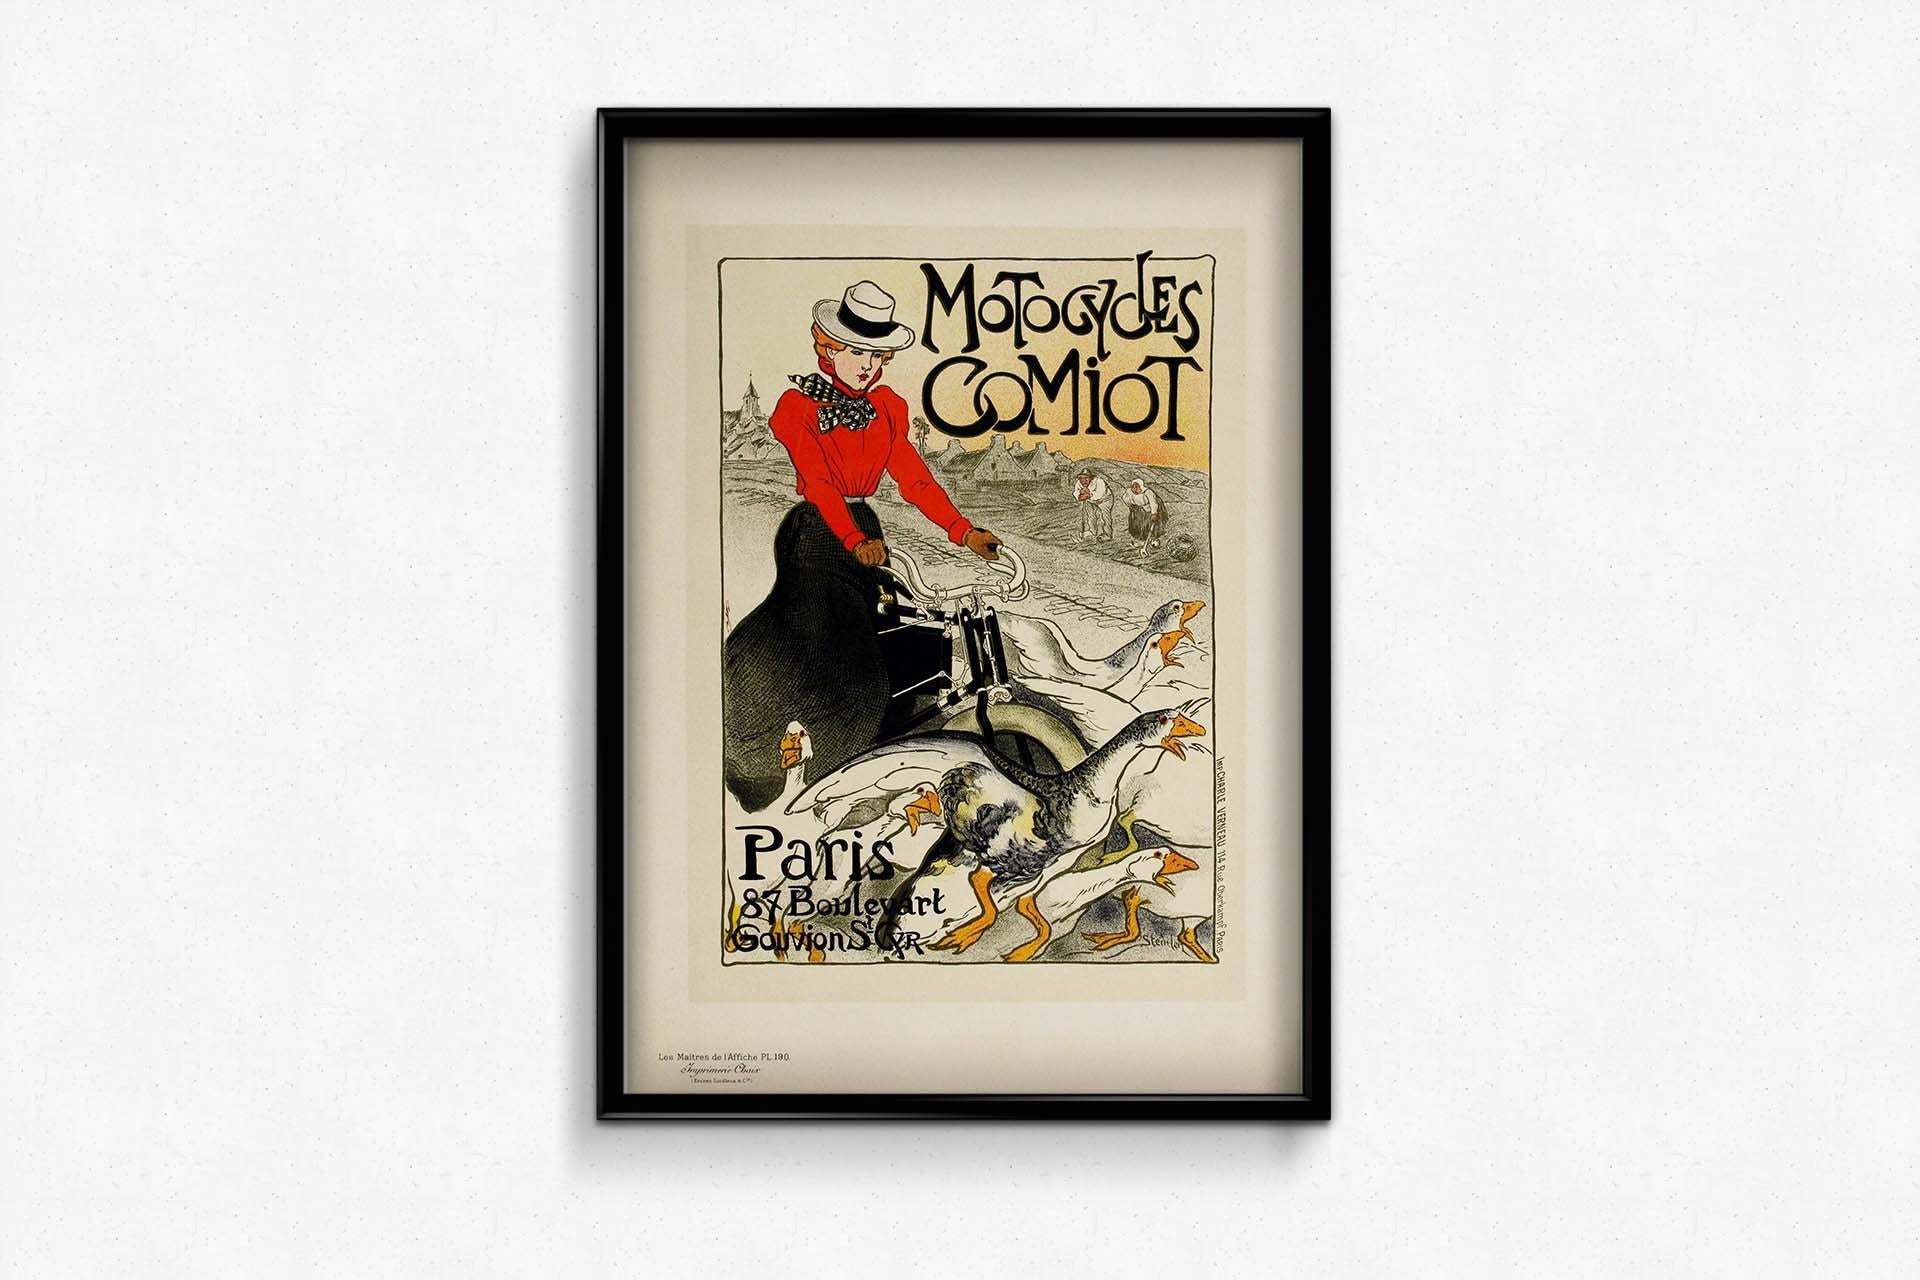 1899 Original poster Motocycles Comiot Paris - Les Maîtres de l'affiche Pl. 190 - Art Nouveau Print by Théophile Alexandre Steinlen